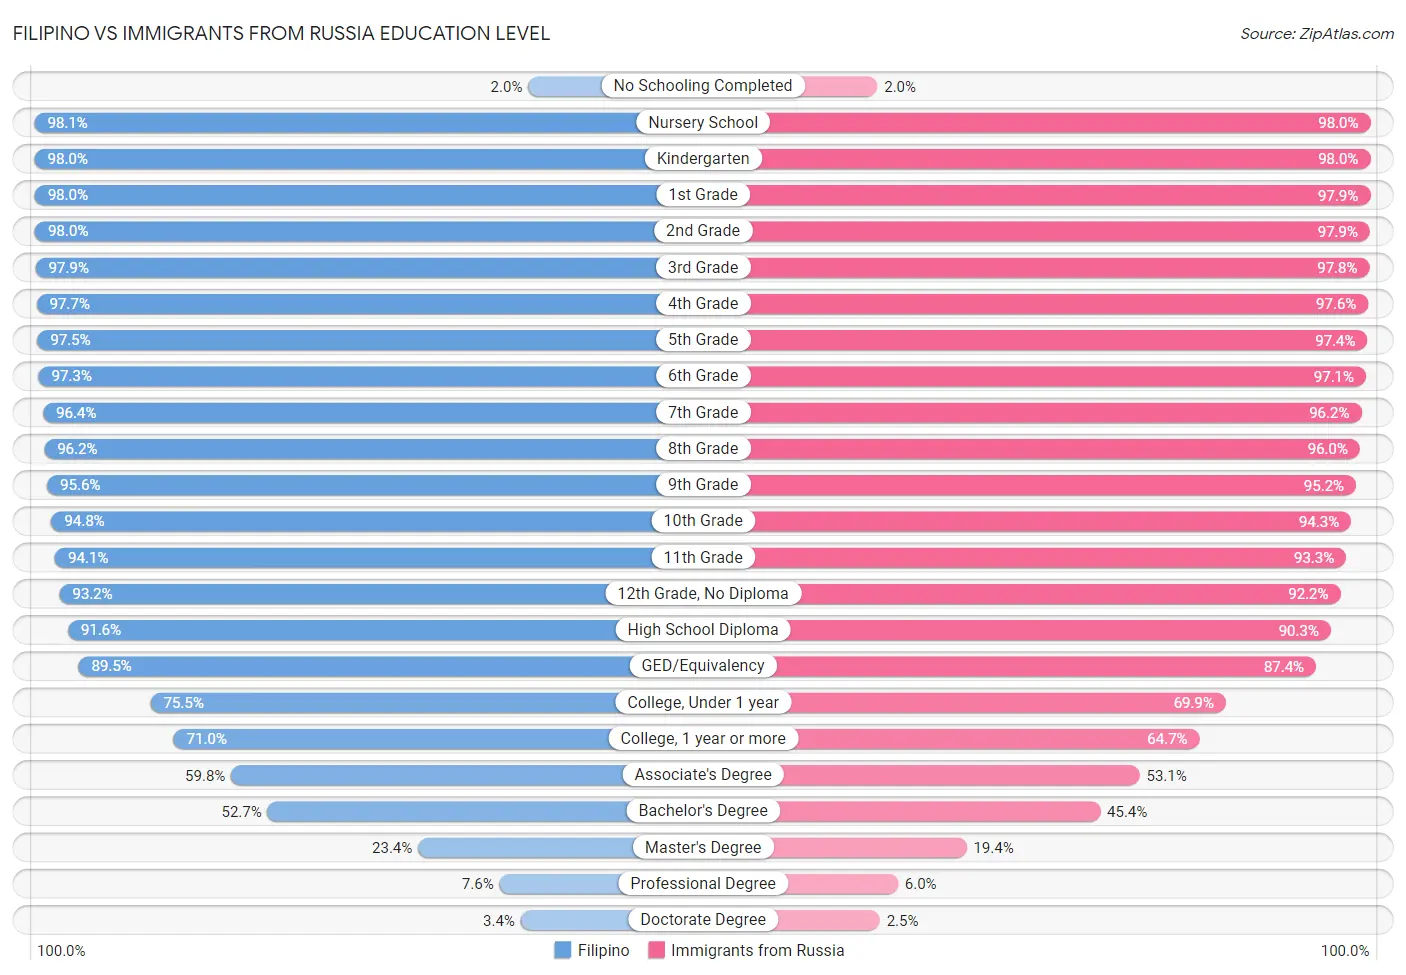 Filipino vs Immigrants from Russia Education Level